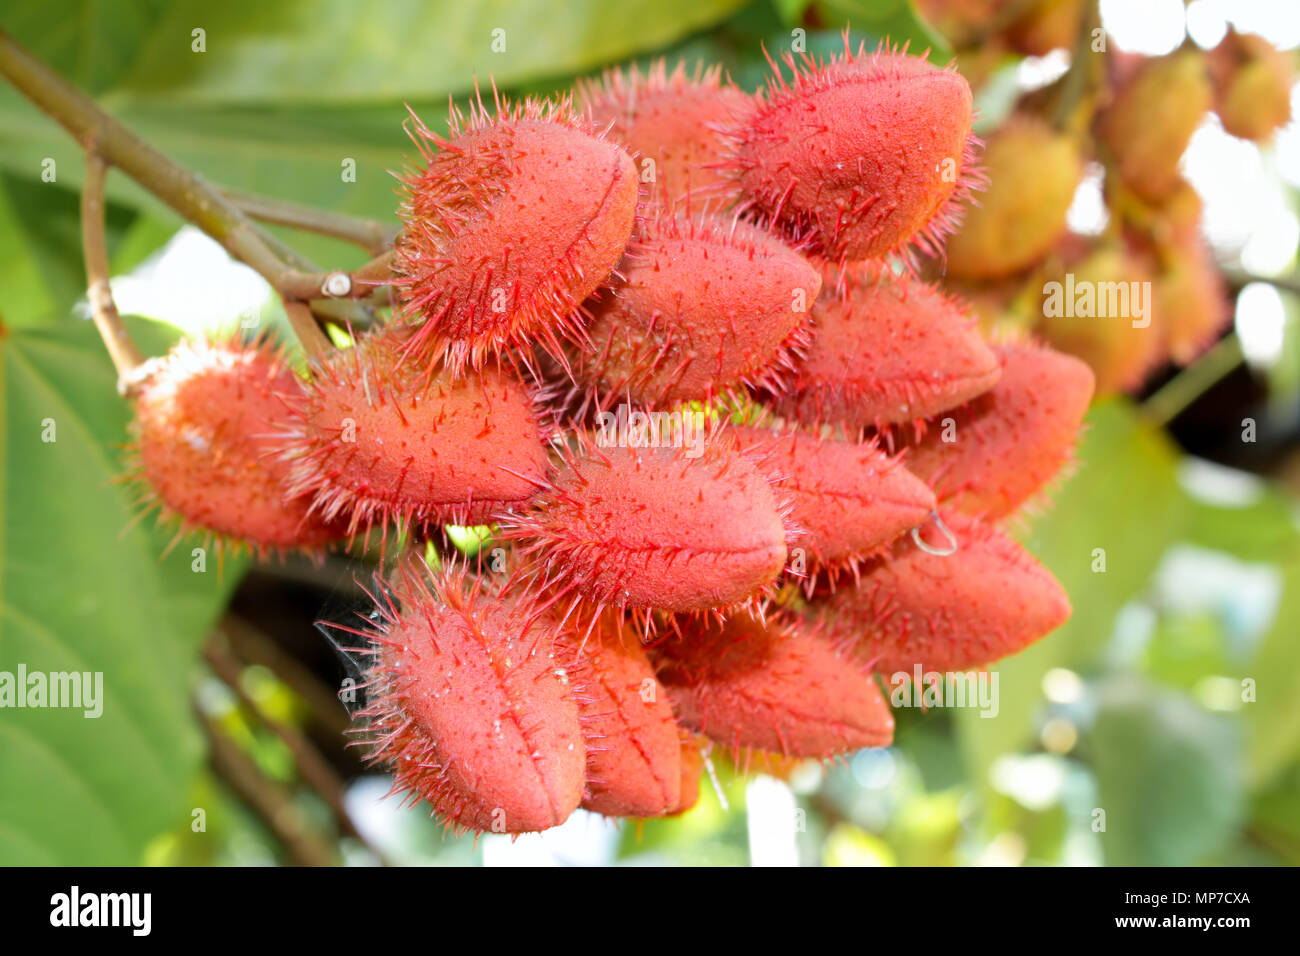 Reif Rambutan (Nephelium lappaceum) Früchte tropische Frucht auf Zweig, Kuba Stockfoto